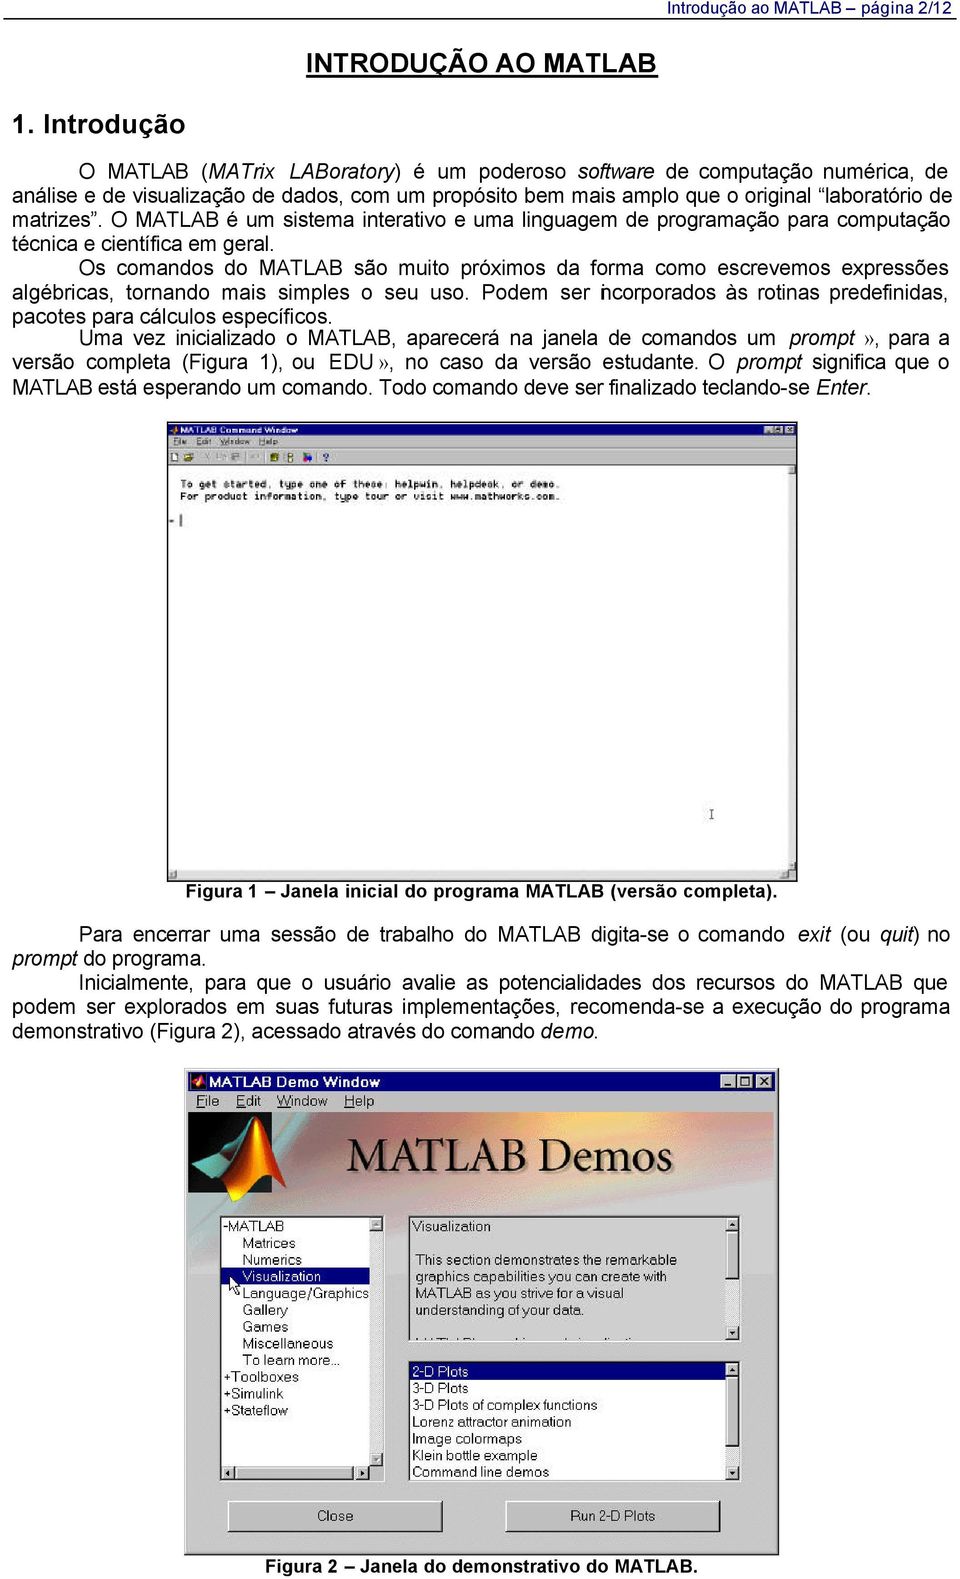 O MATLAB é um sistema interativo e uma linguagem de programação para computação técnica e científica em geral.